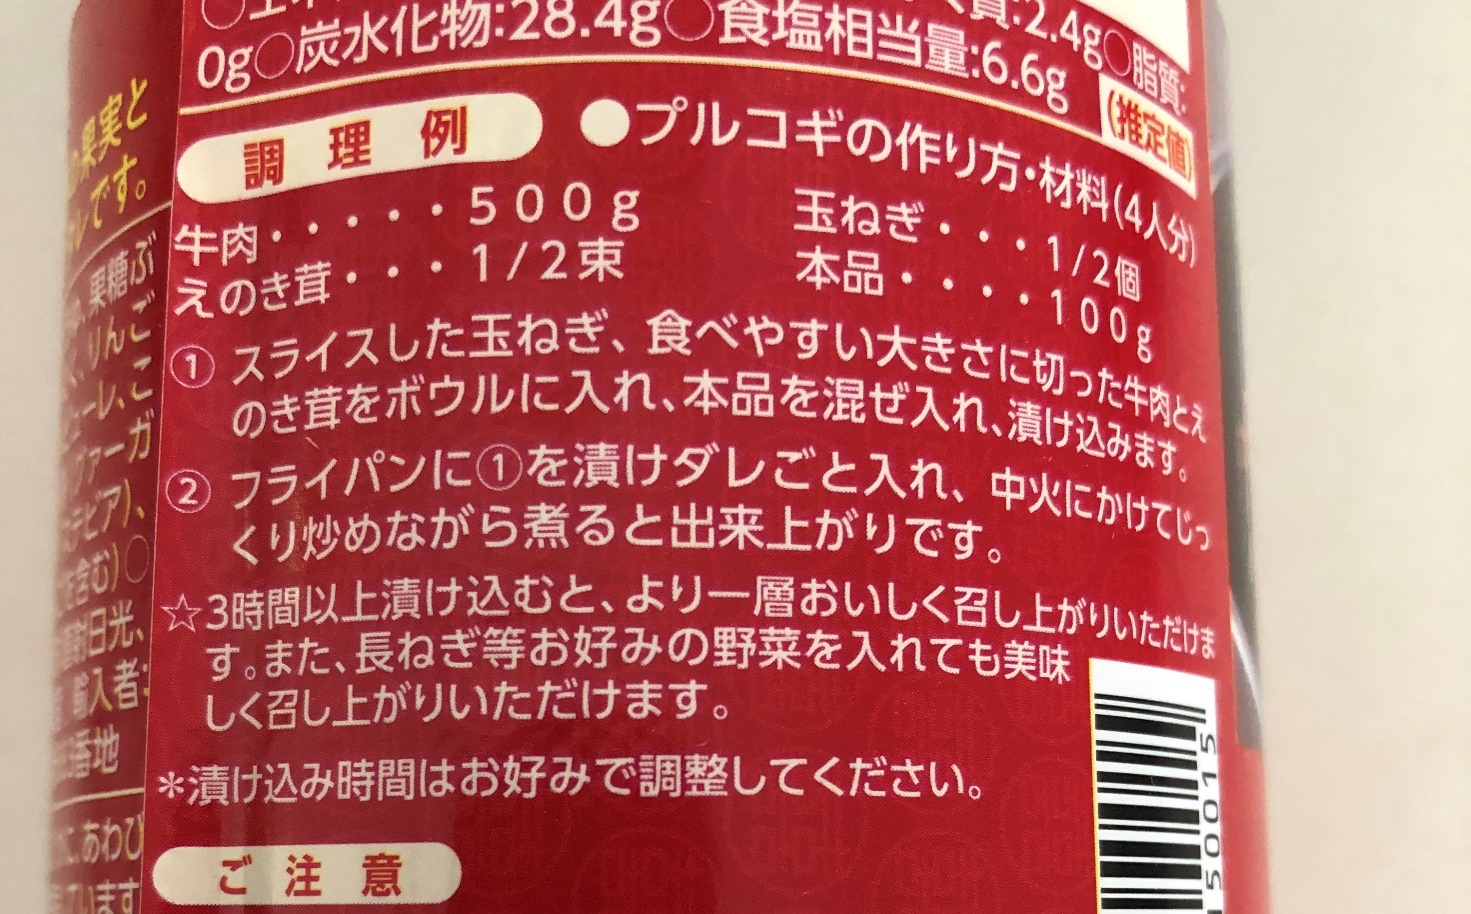 業務スーパーのプルコギのたれの瓶ラベルに記載されている調理例